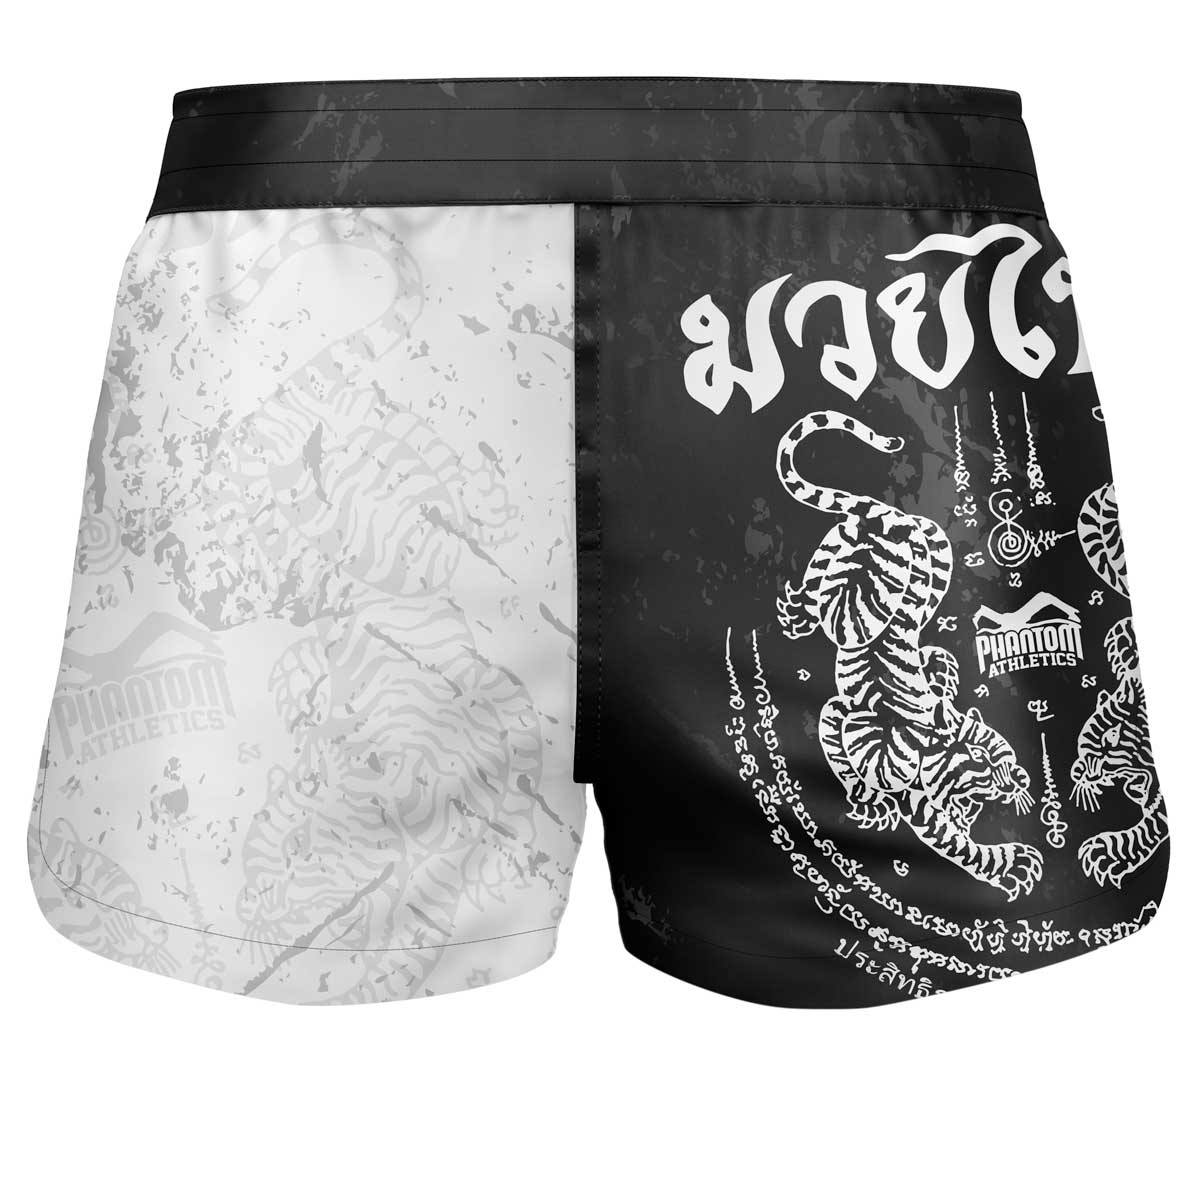 Borbene kratke hlače fusion muay thai - crno/bijele